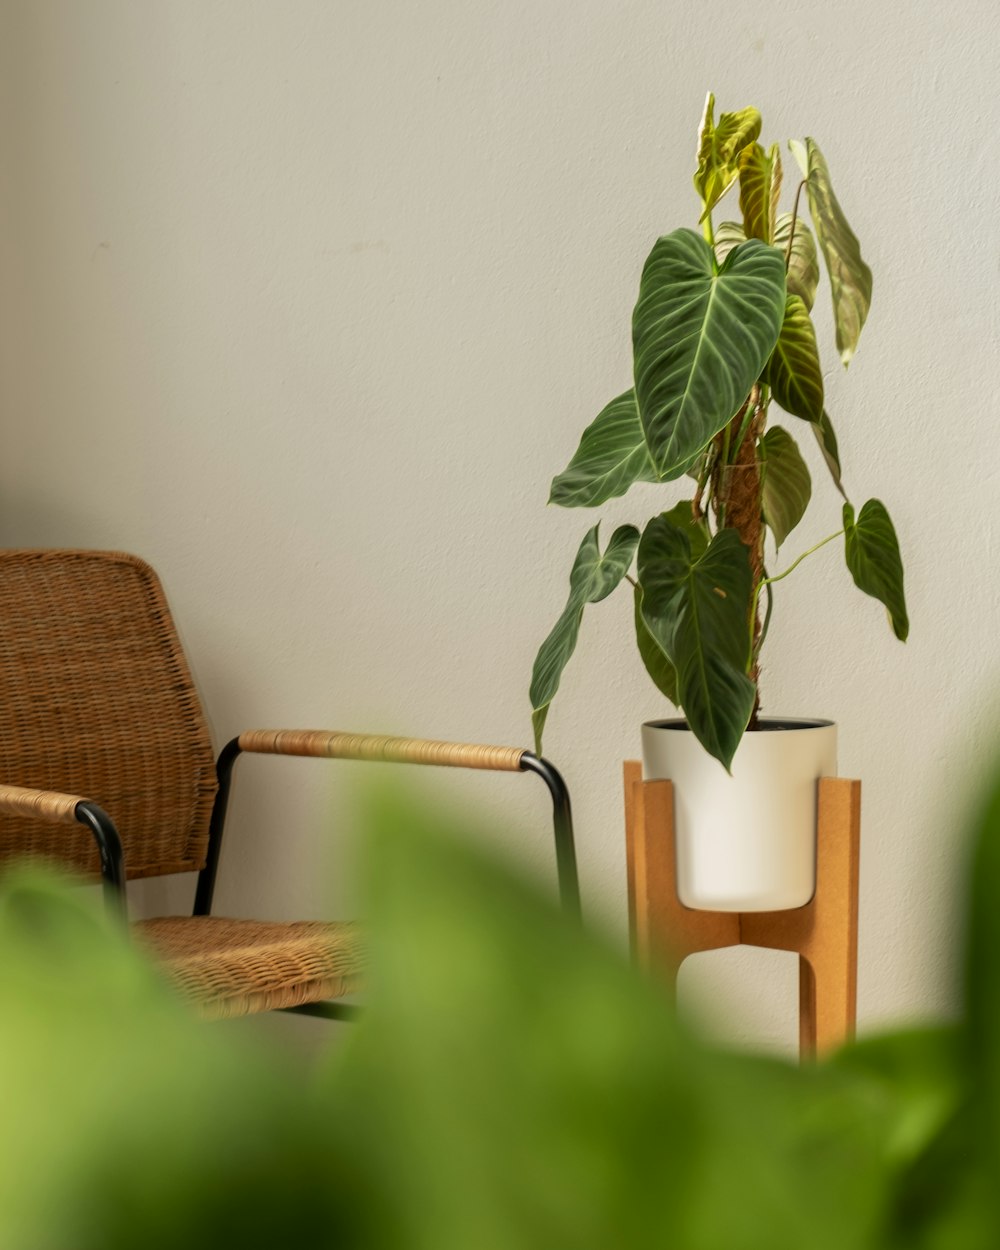 una silla y una planta en maceta sobre una mesa